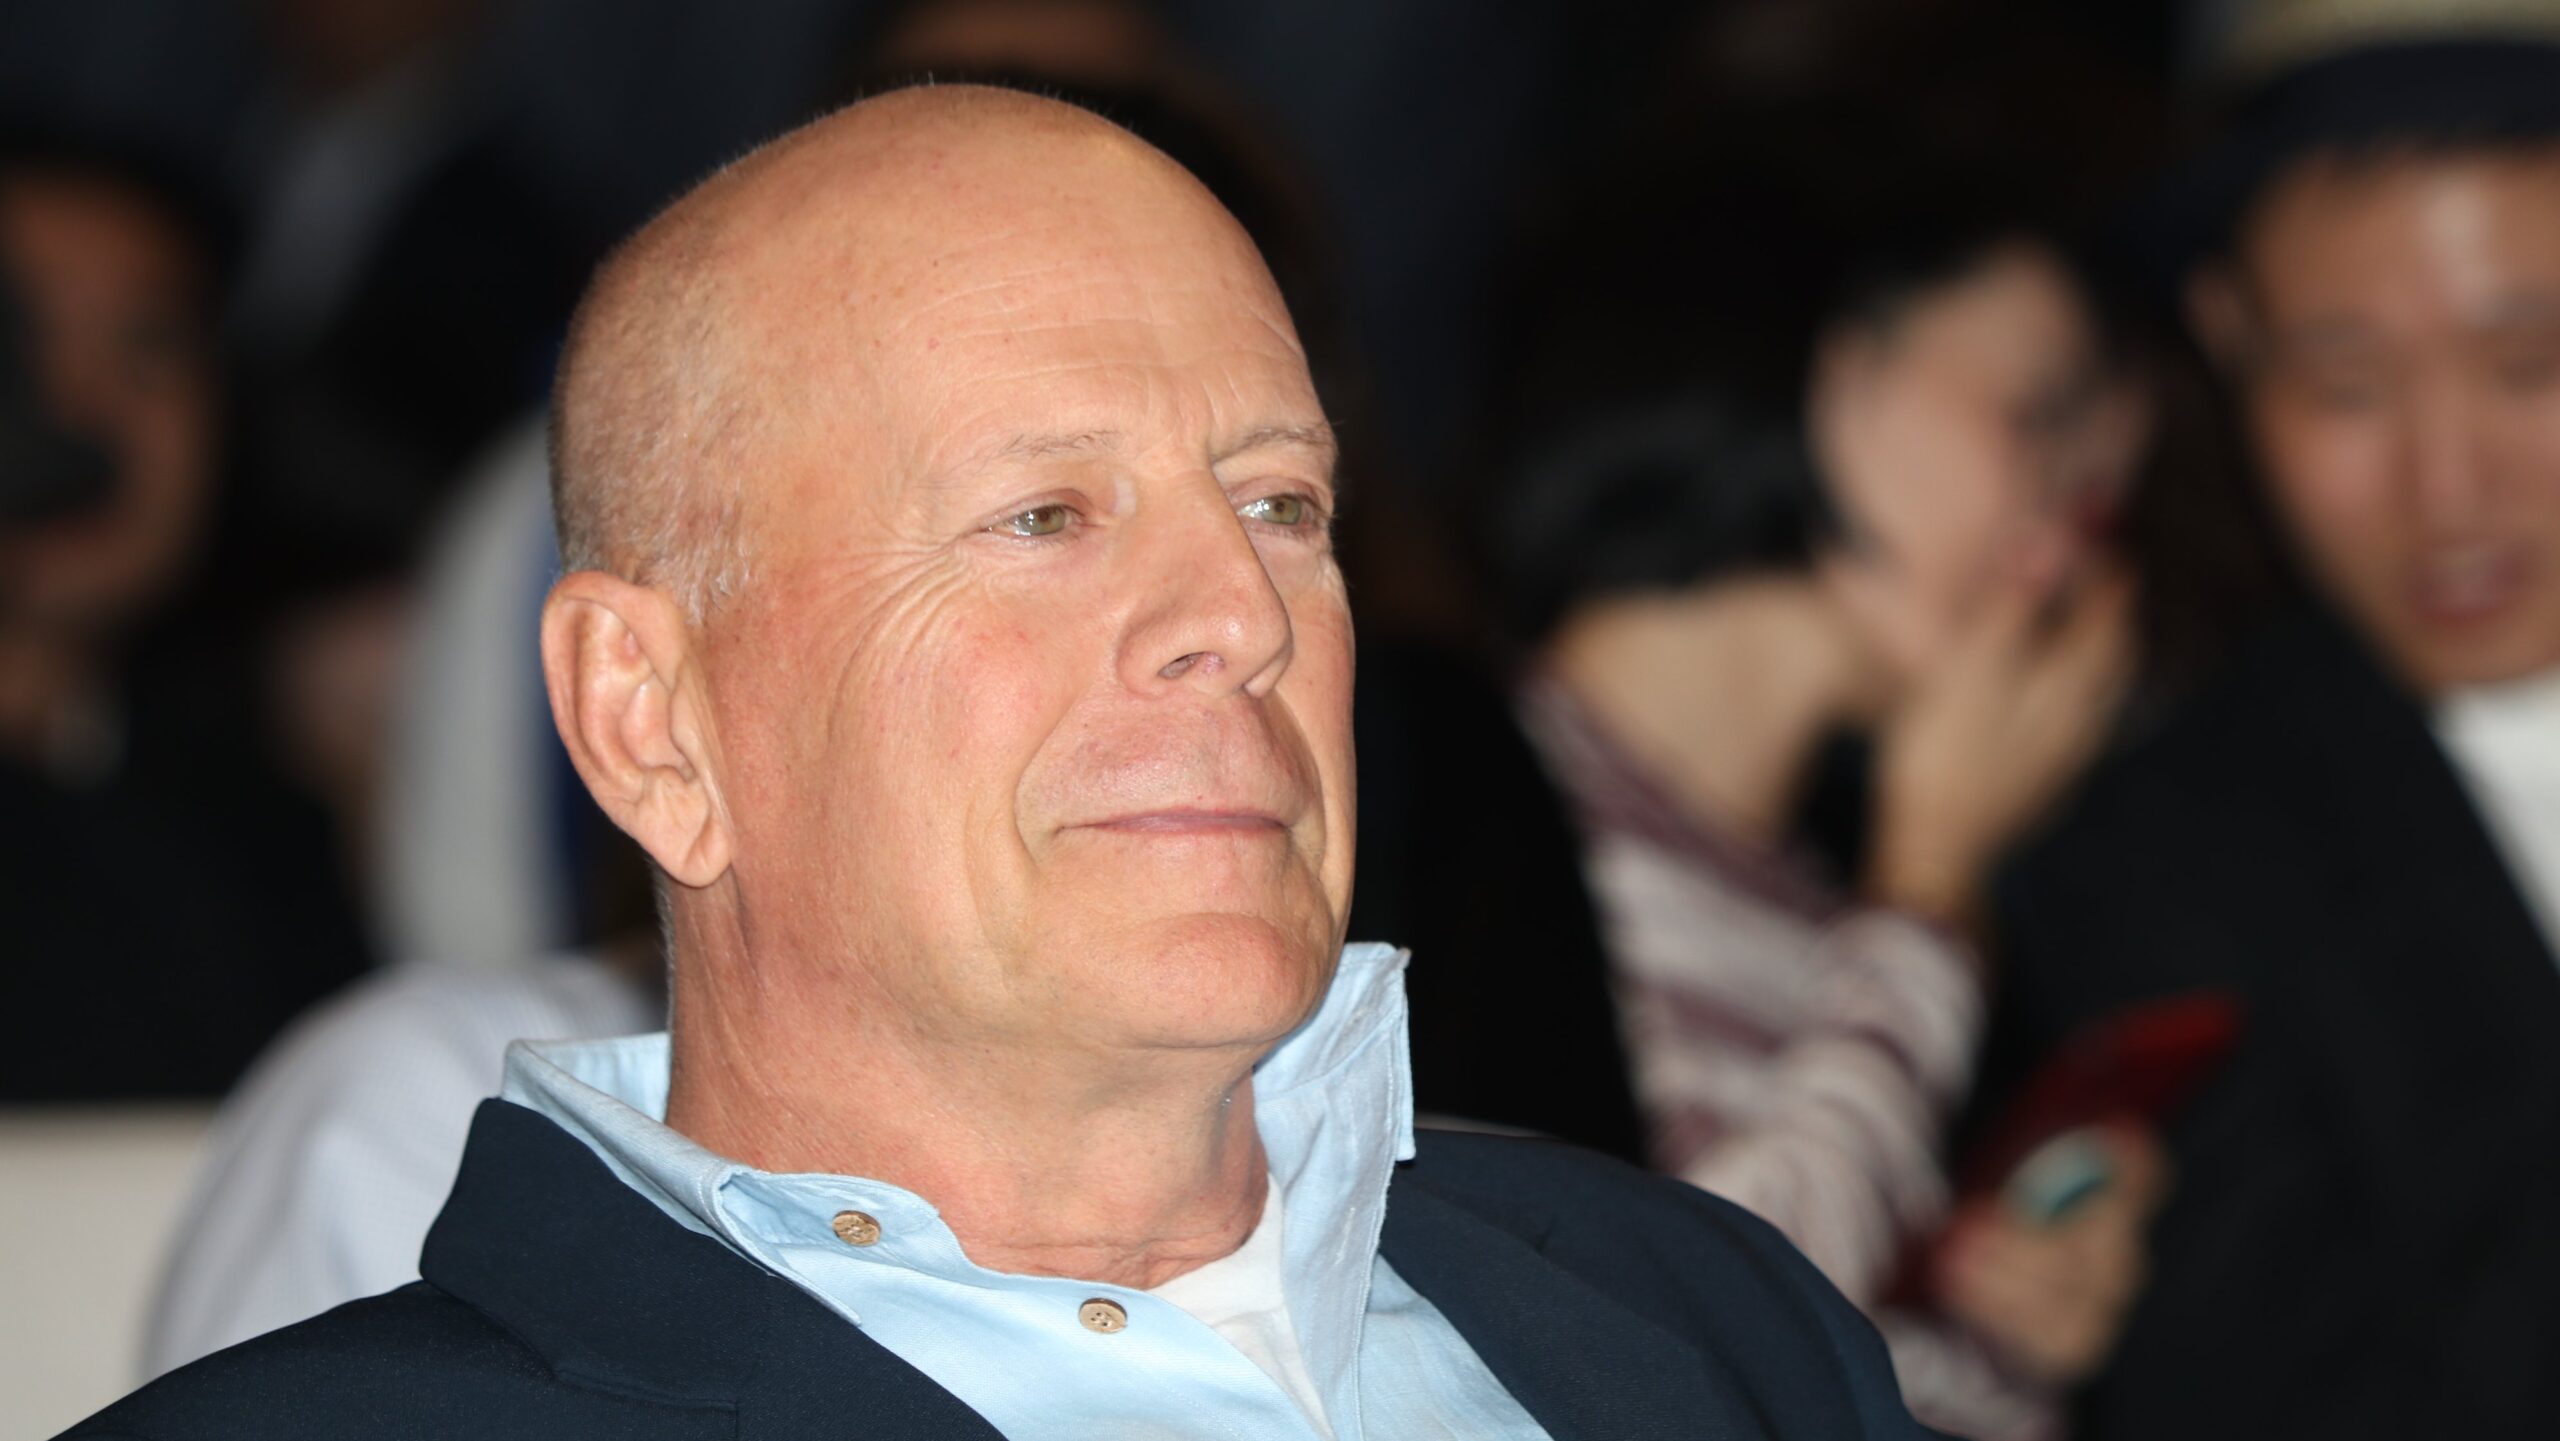 Bruce Willis atteint de démence : "Les options sont minces" avoue son épouse